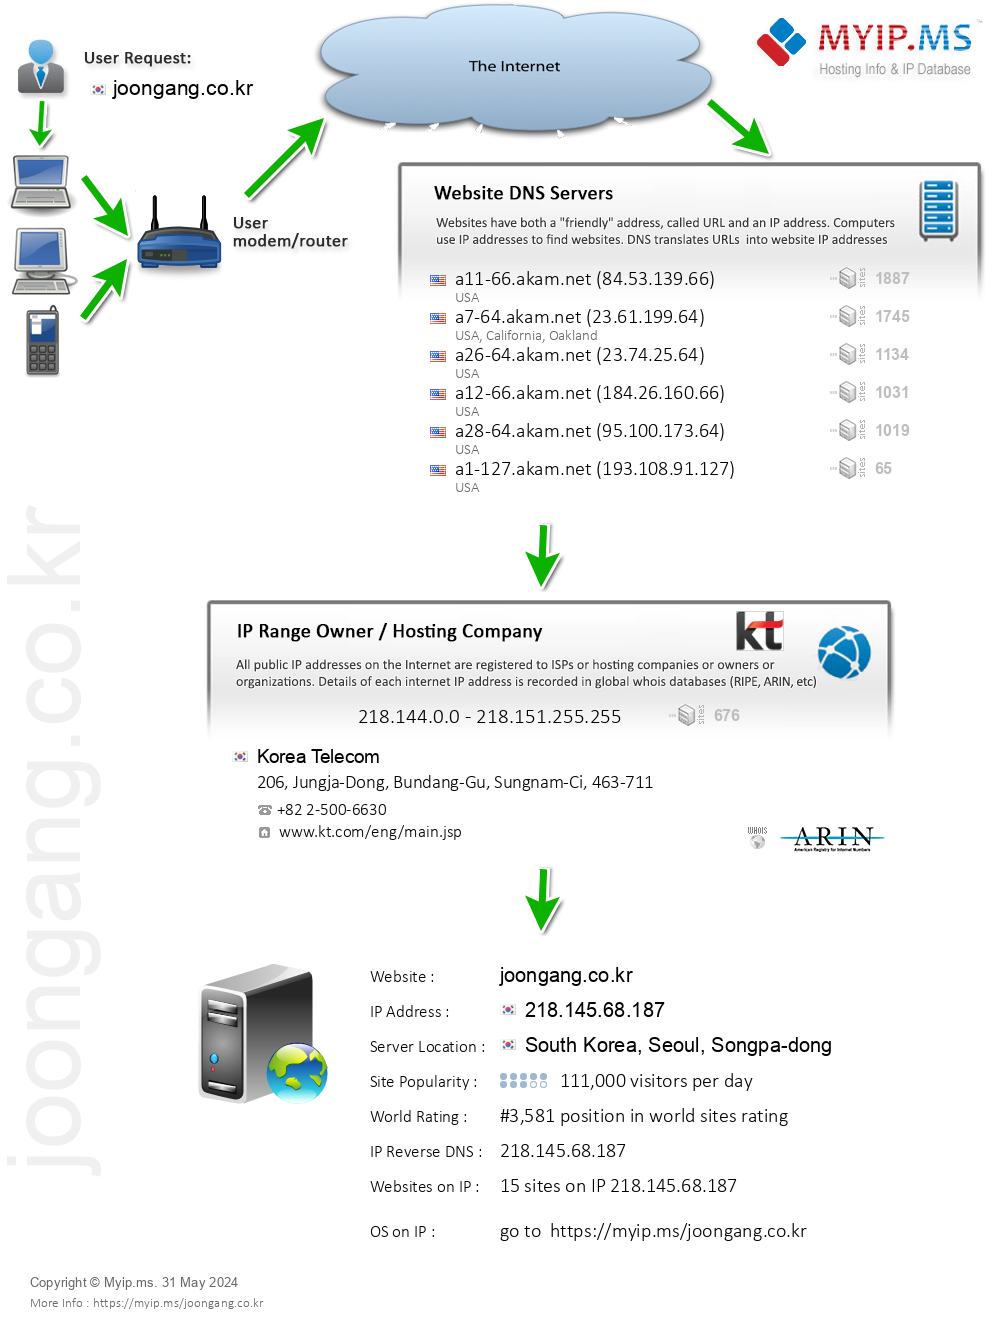 Joongang.co.kr - Website Hosting Visual IP Diagram